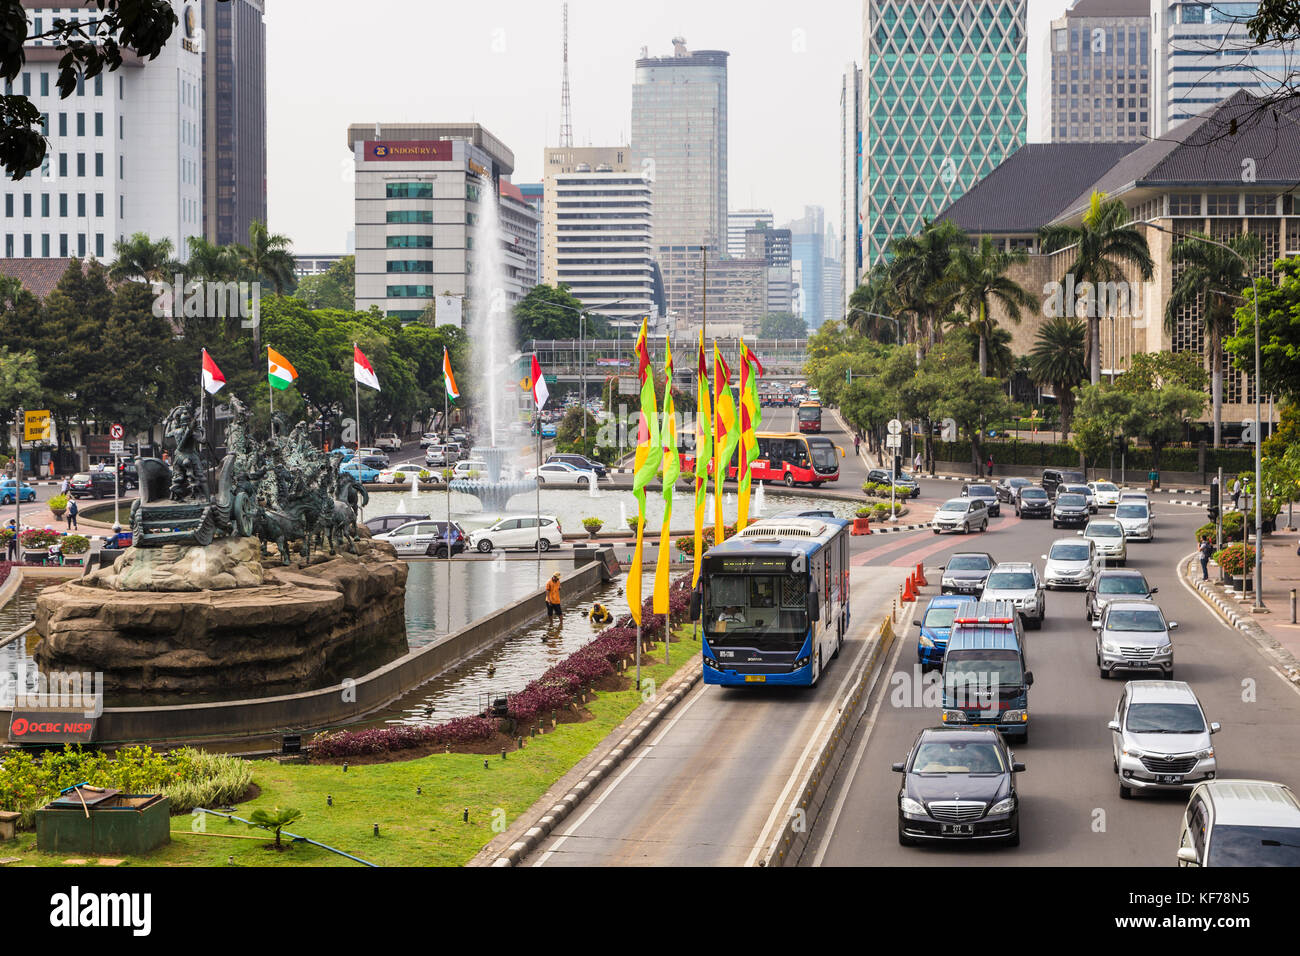 Jakarta, Indonesien - 16. Oktober 2017: ein transjakarta Bus verwendet seine eigene Fahrstreifen zu den starken Verkehr entlang der thamrin Avenue im b zu vermeiden. Stockfoto